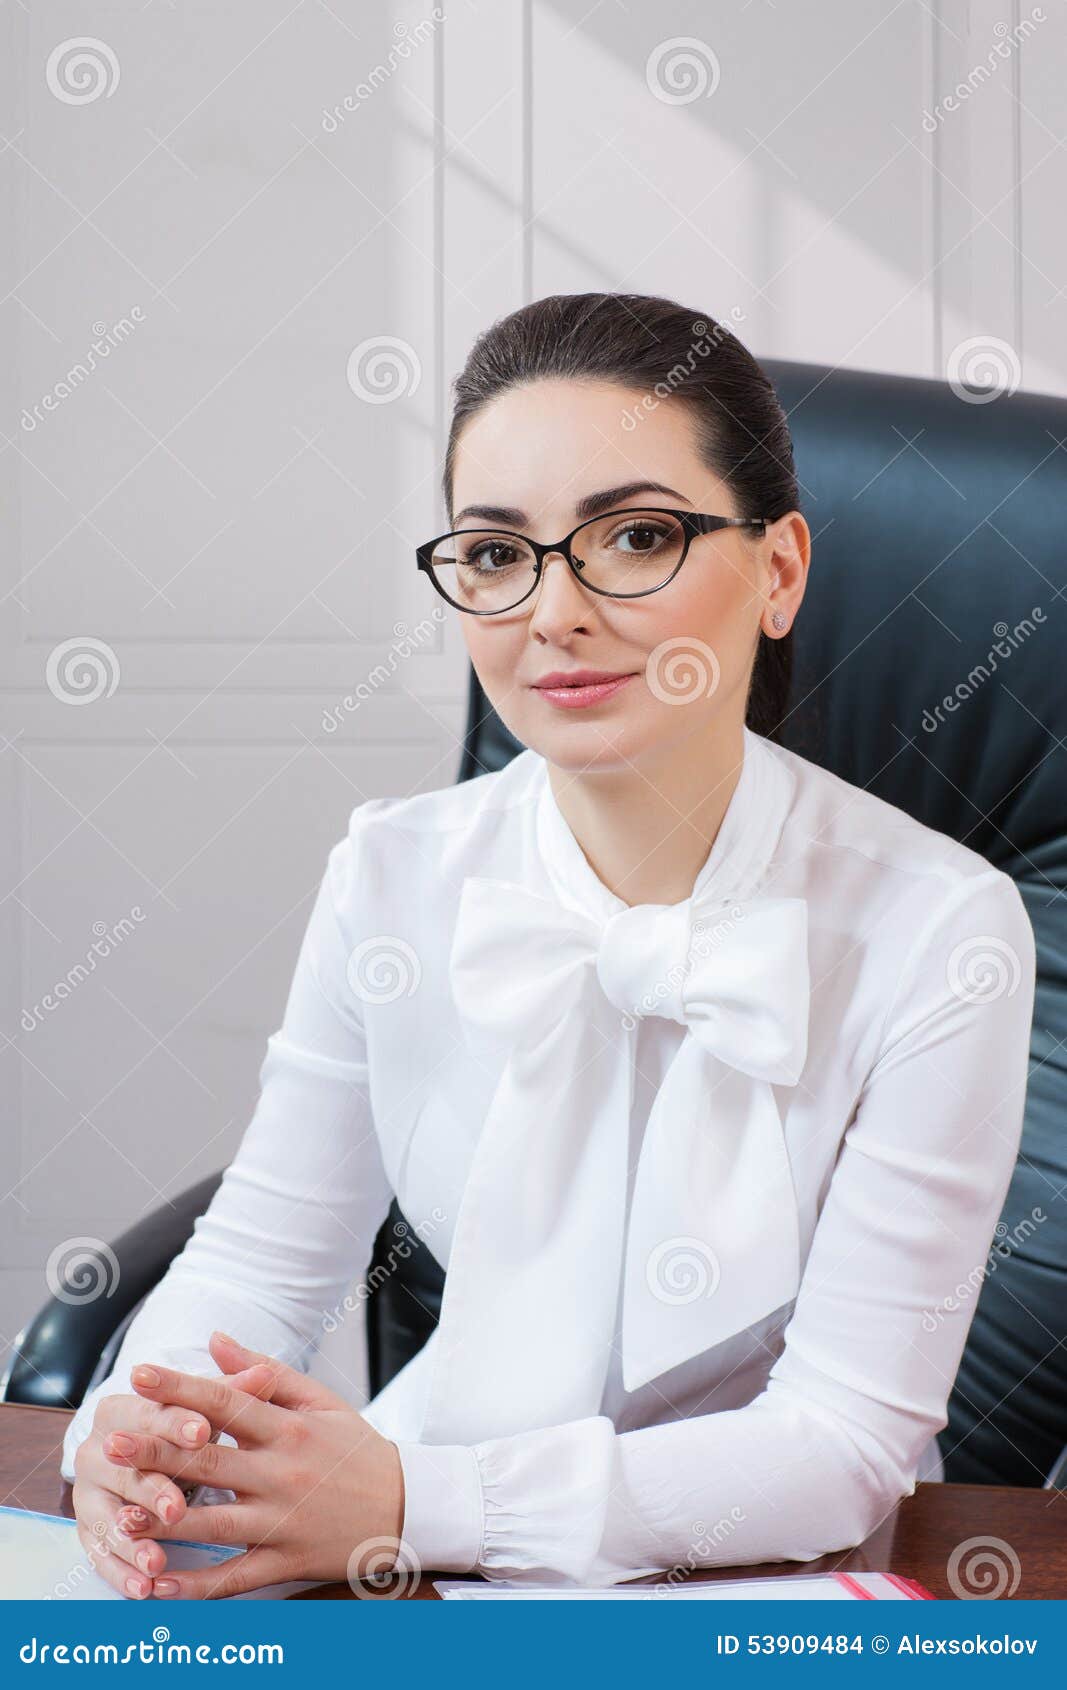 lawyer woman